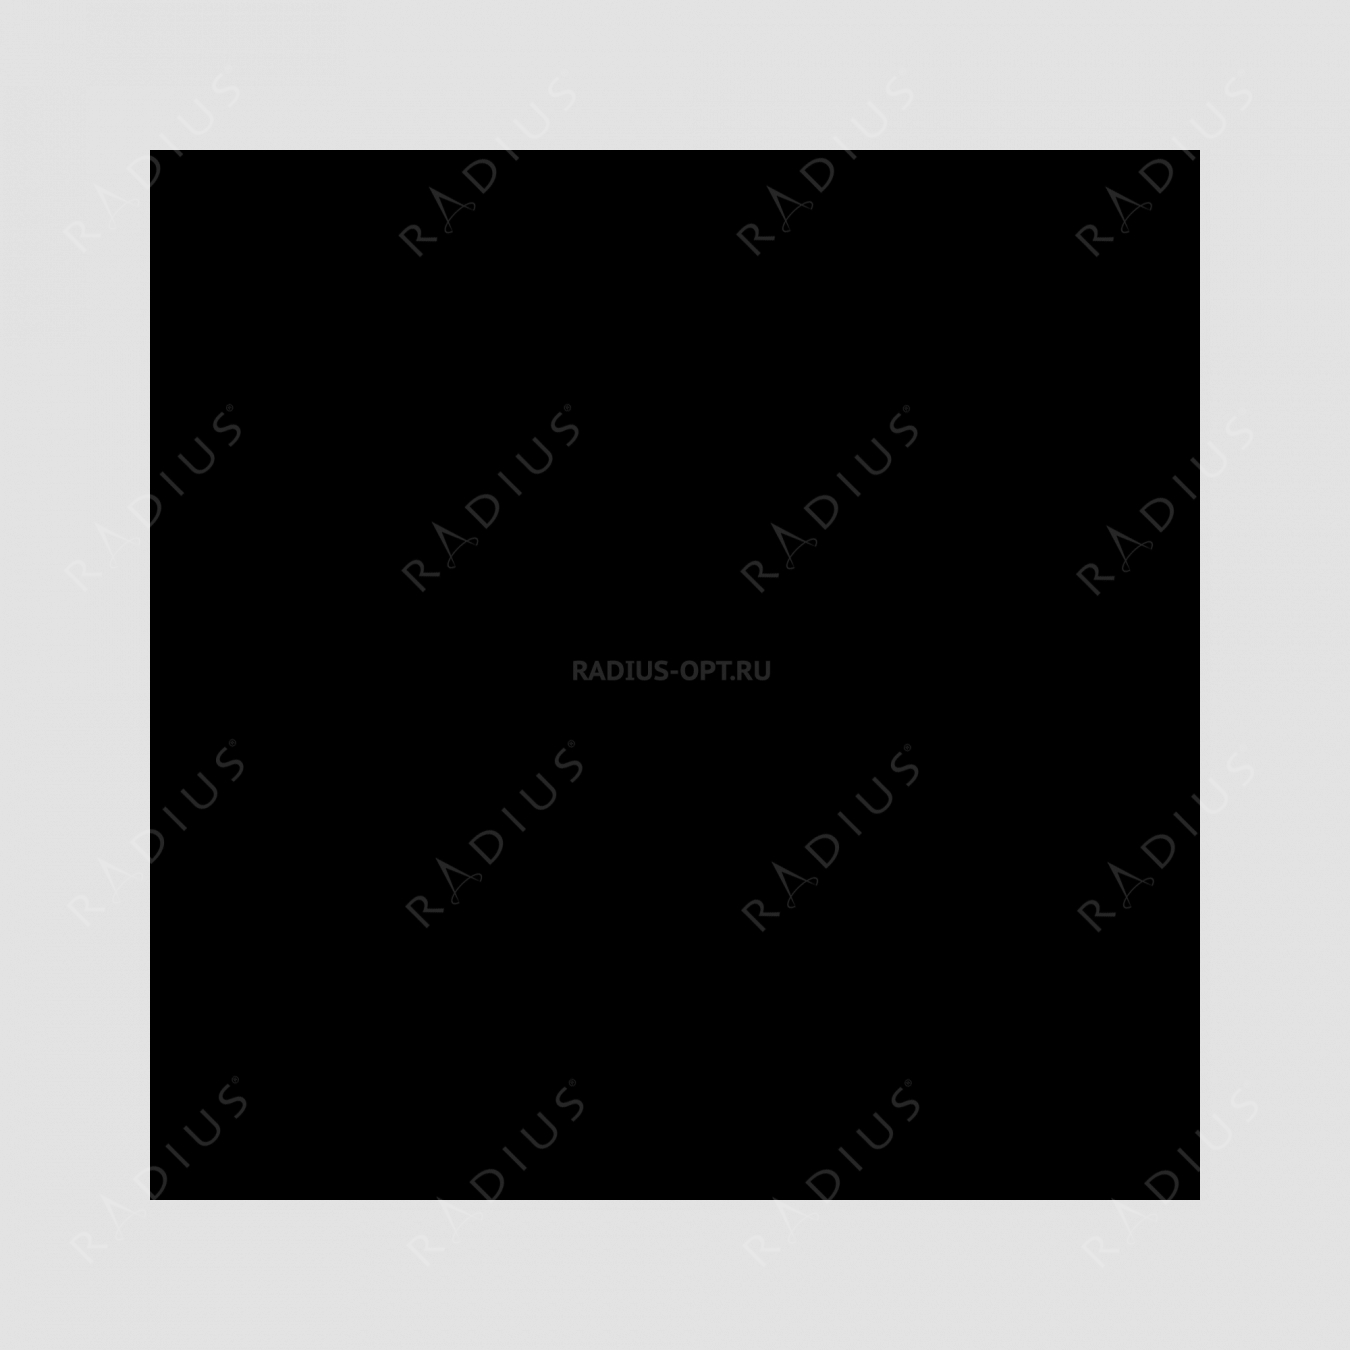 Кастрюля с крышкой, диаметр 28 см, объем 6,1 л, чугун с эмалированным покрытием, цвет рубин, серия Rubis, INVICTA, Франция